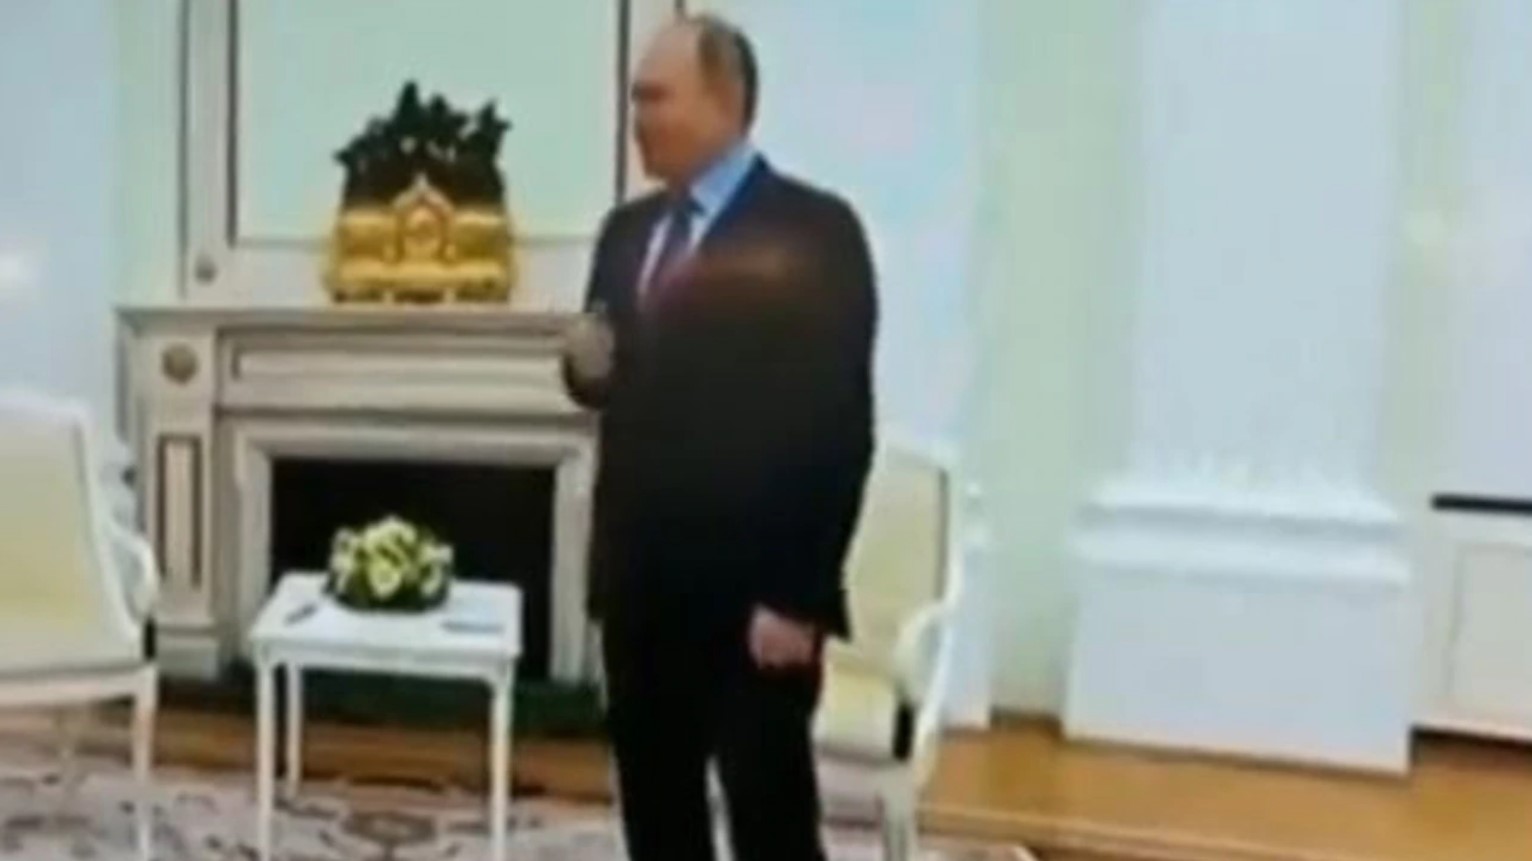 El VIDEO de un Putin tembloroso aumenta los rumores sobre sus problemas de salud